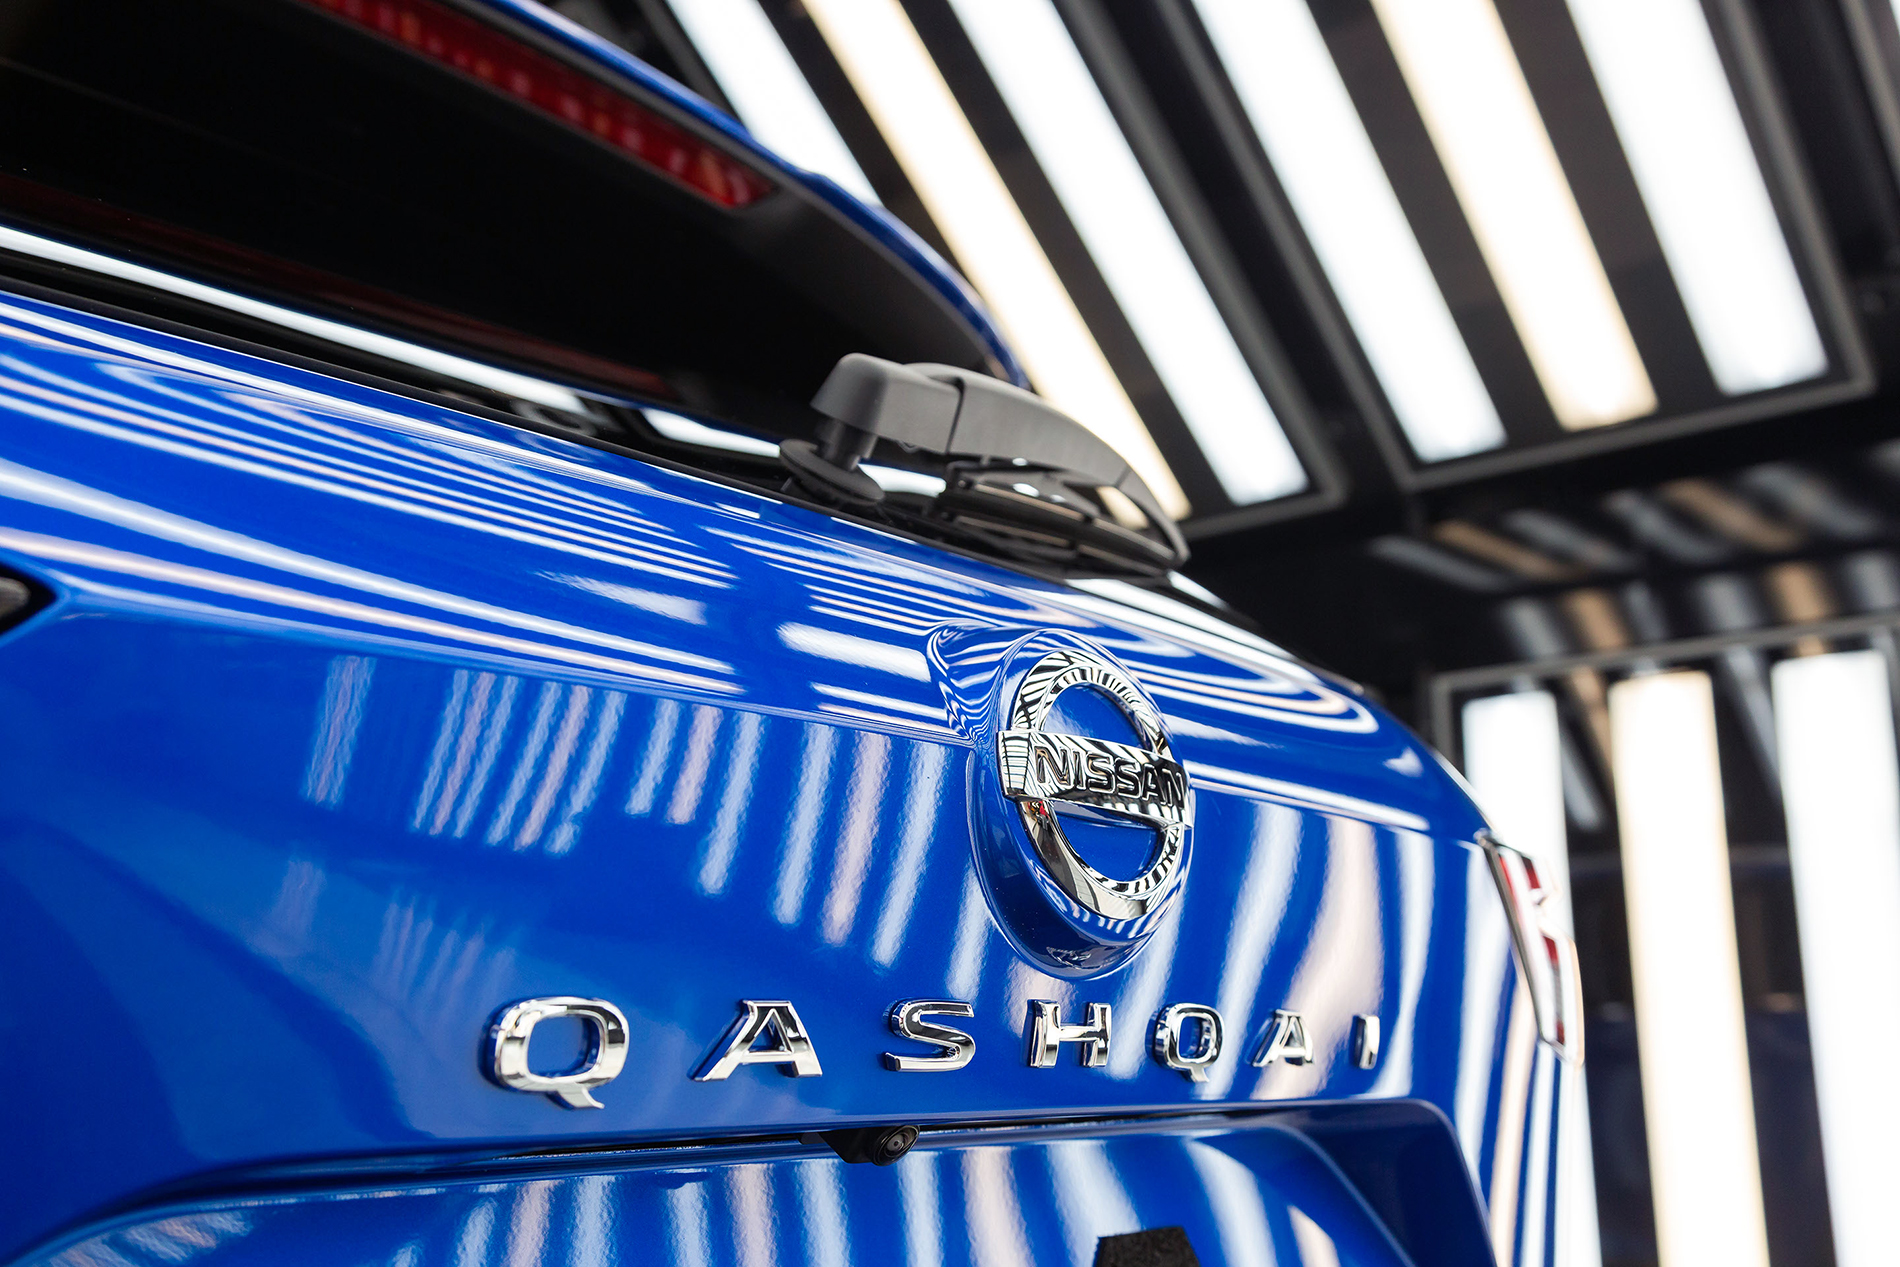 Nissan - ruszyła produkcja Qashqai  III generacji w zakładach w Sunderland